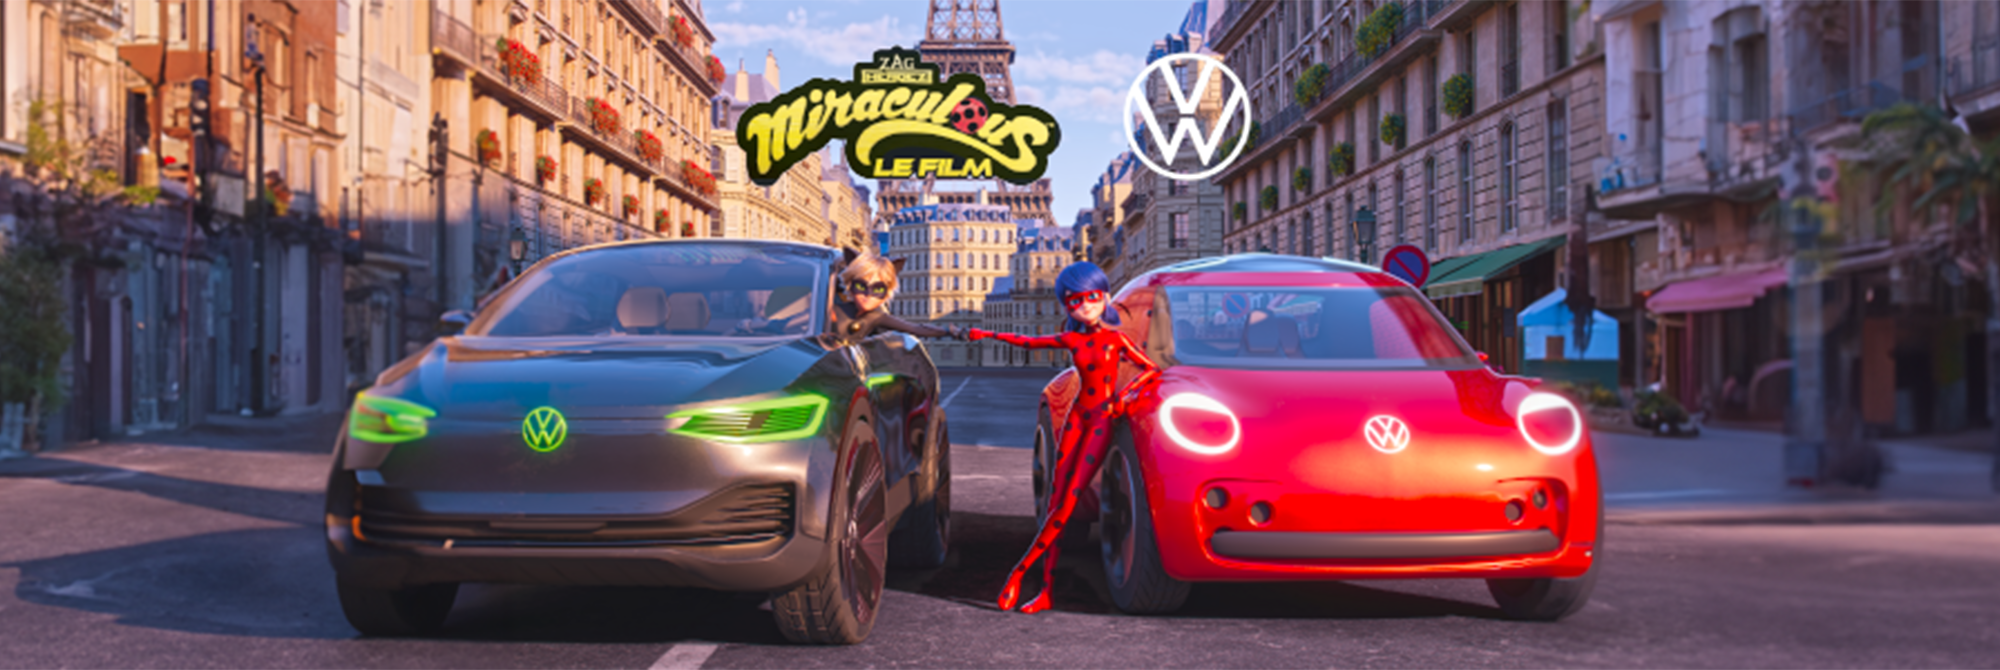 Volkswagen Villemomble - La Magie Miraculous s'invite chez Volkswagen